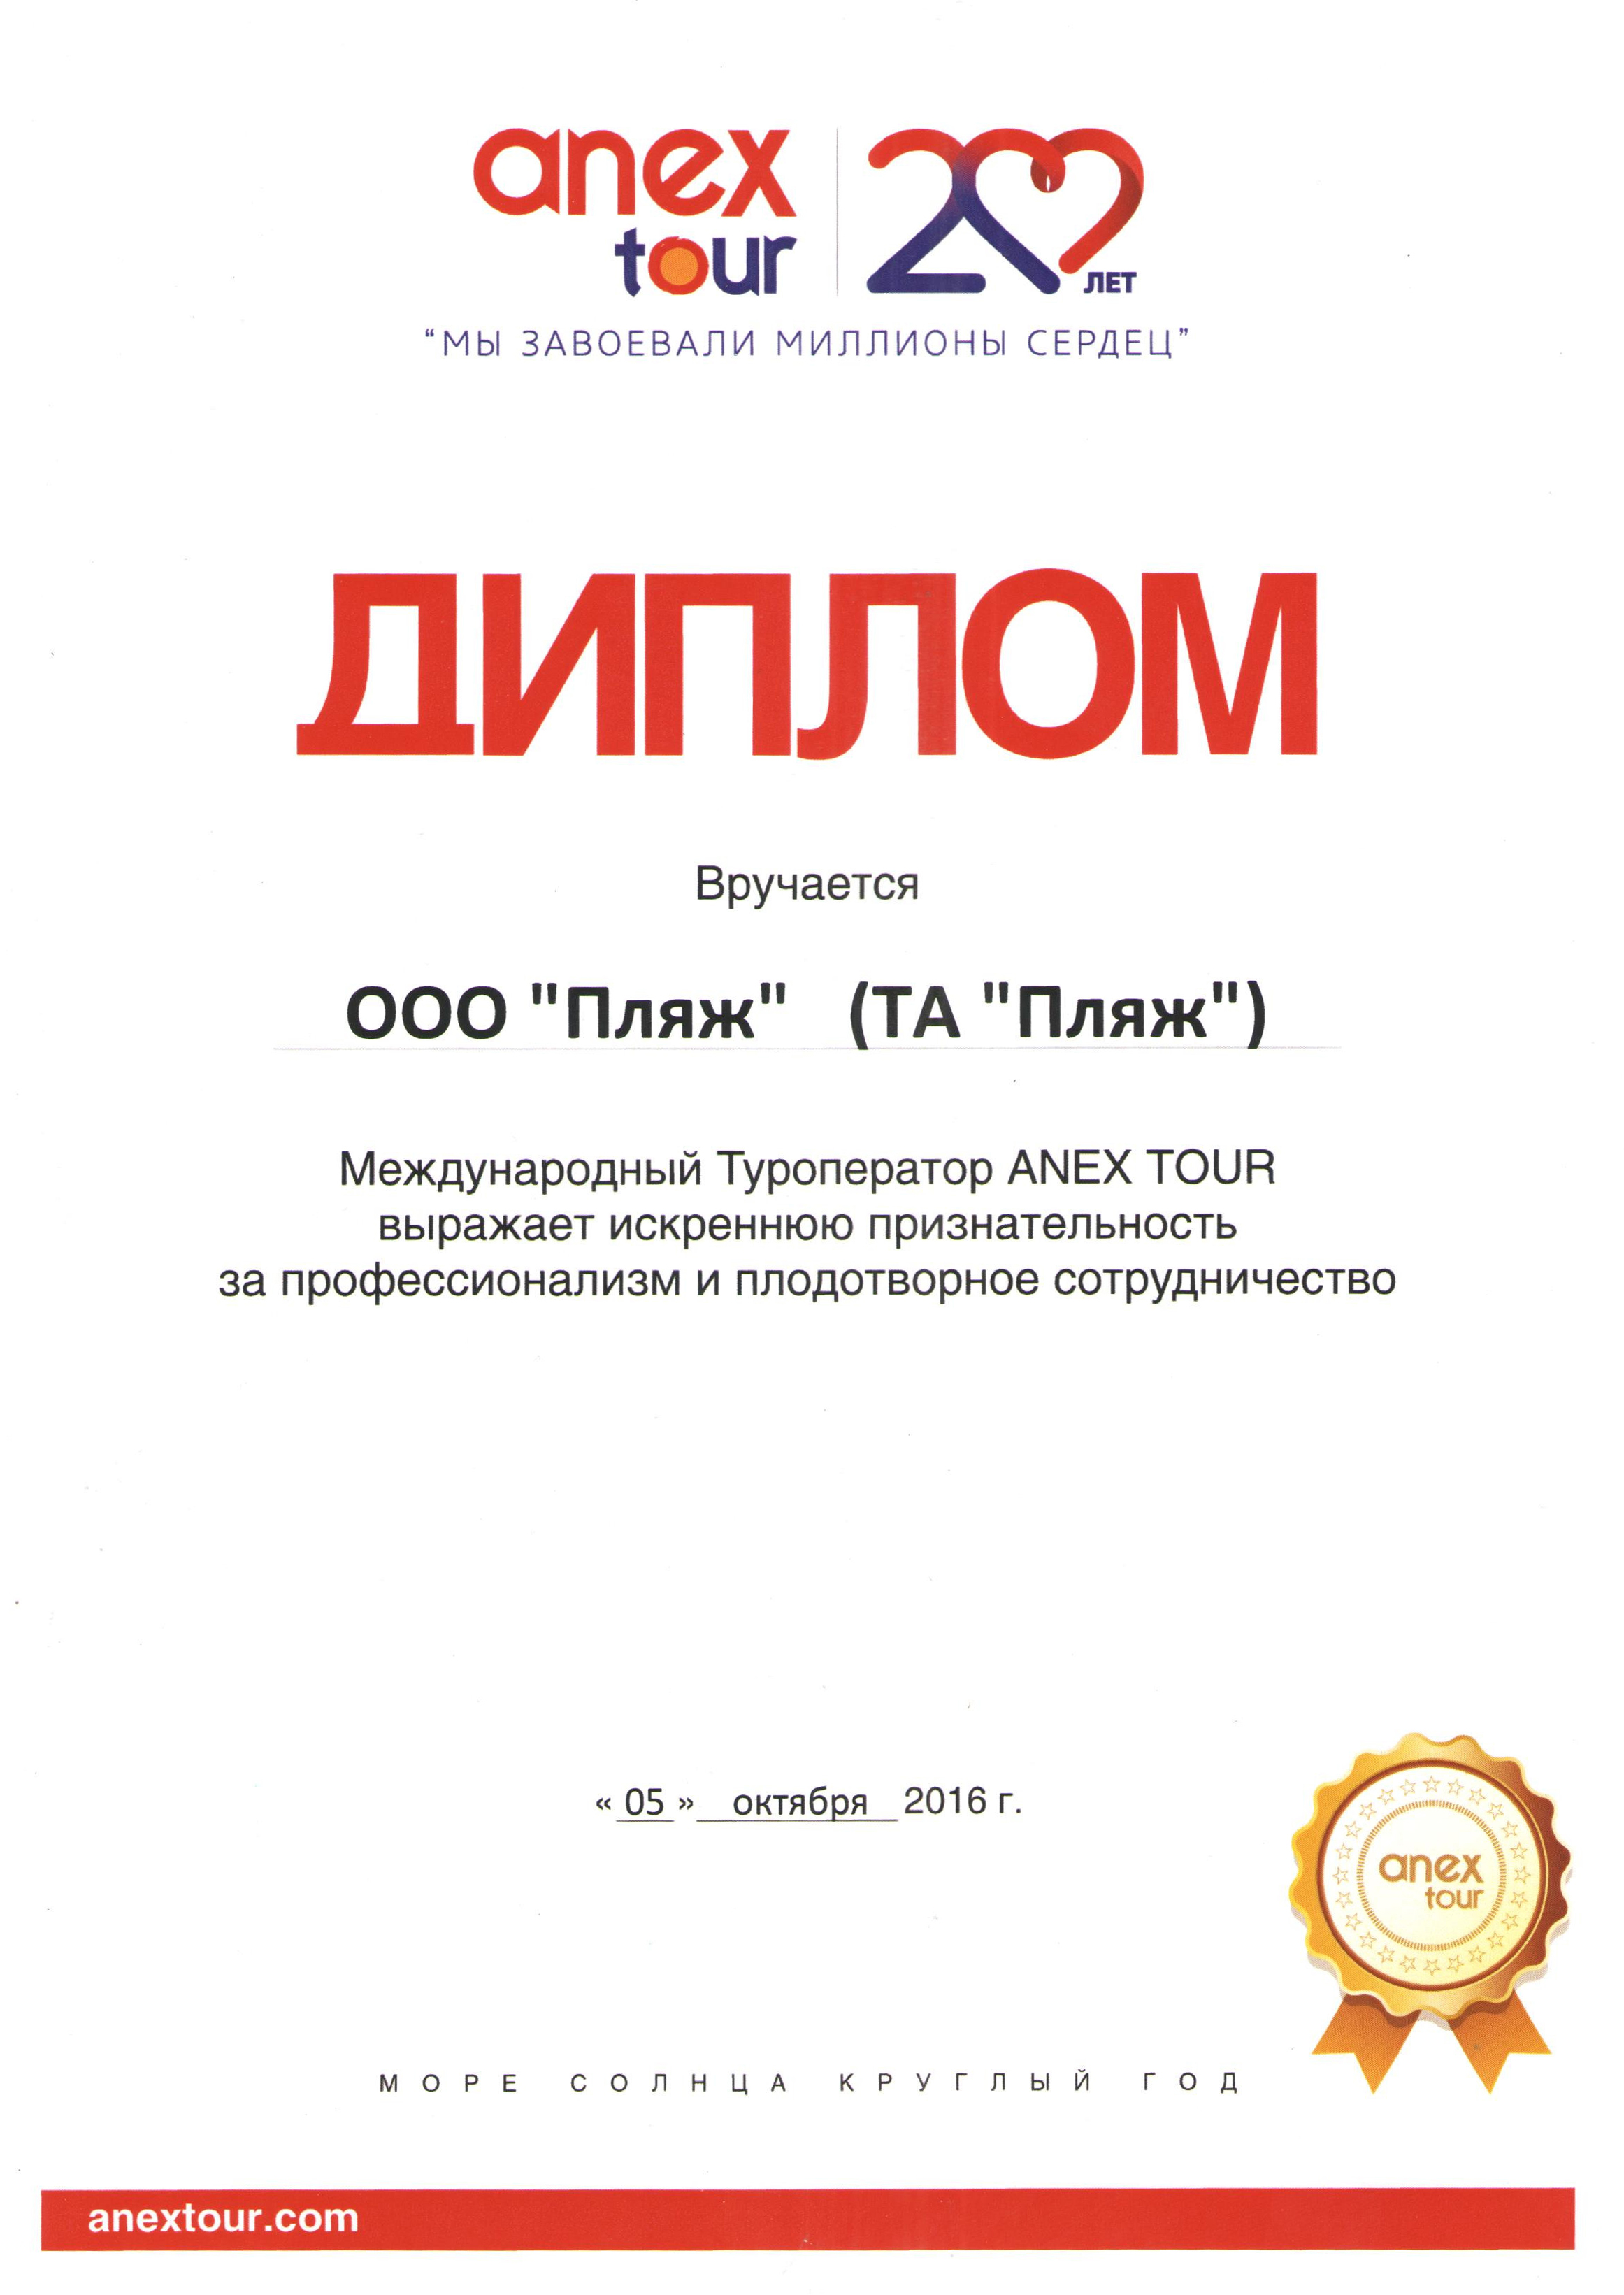 Сайт анекс иркутск. Анекс тур. Сертификат Анекс тур.